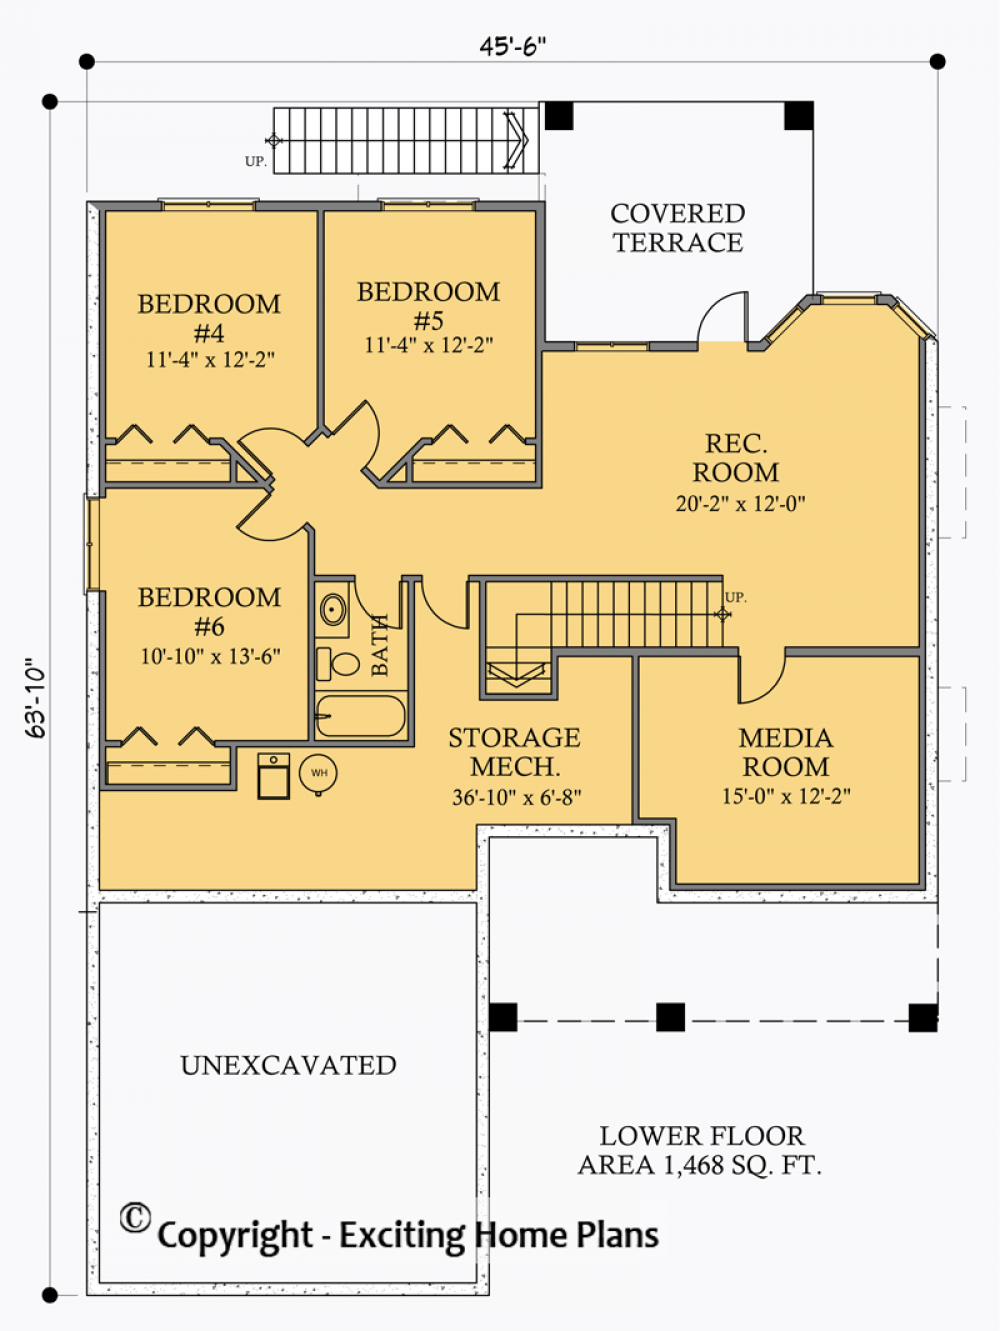 House Plan E1053-10 Lower Floor Plan